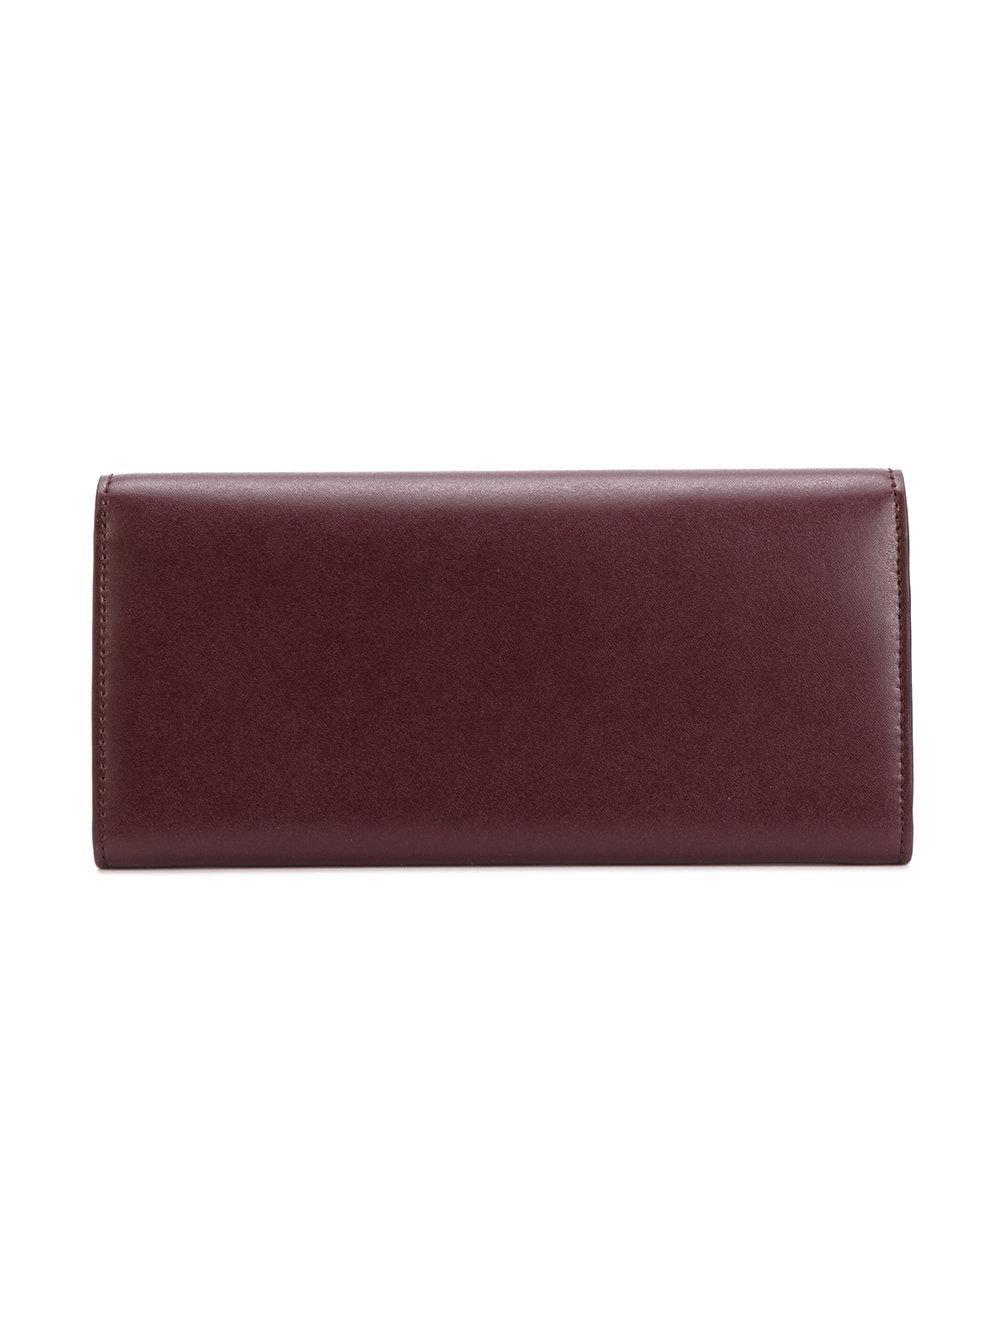 Lyst - Fendi Long Wallet in Red